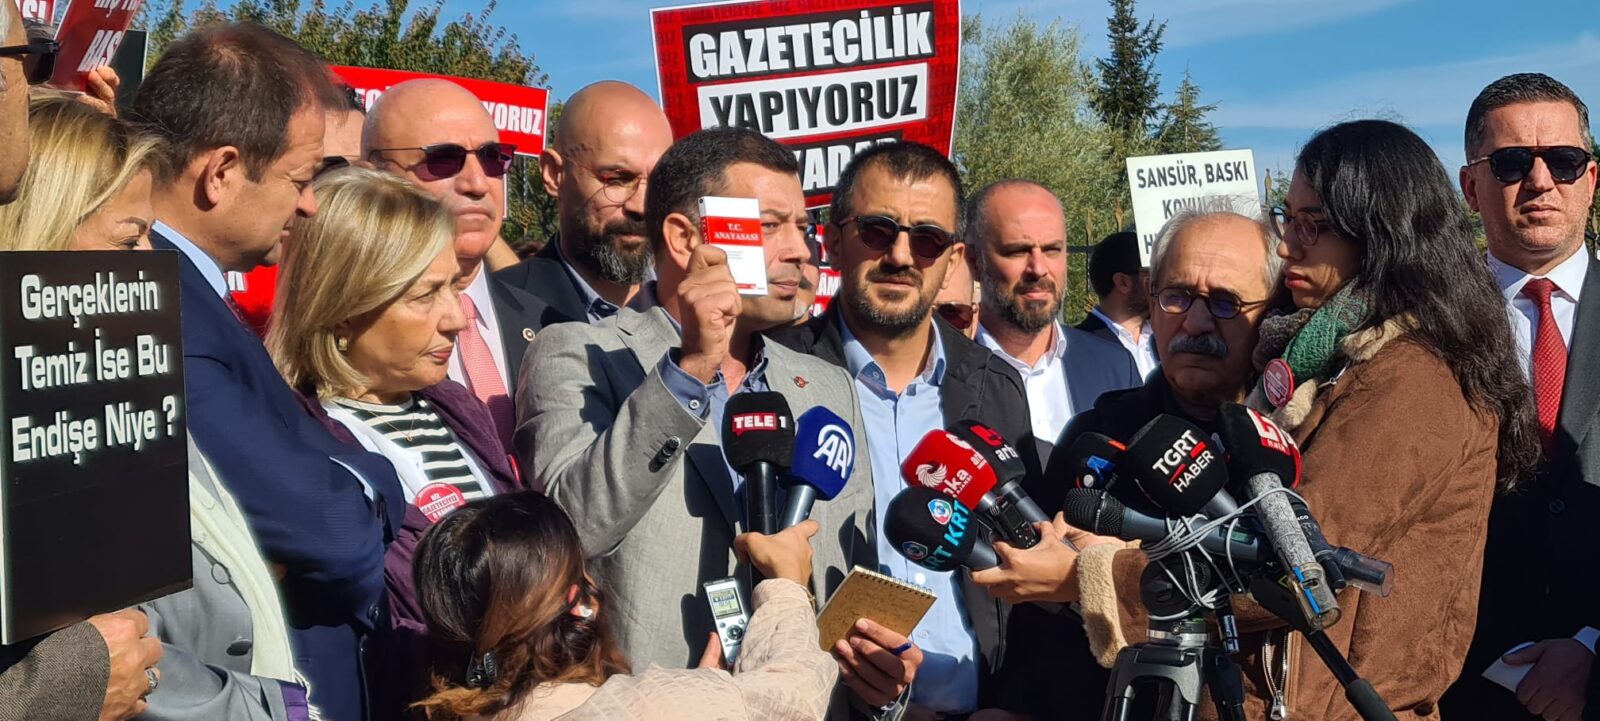 gazeteciler, sansür yasası, AYM, Ankara